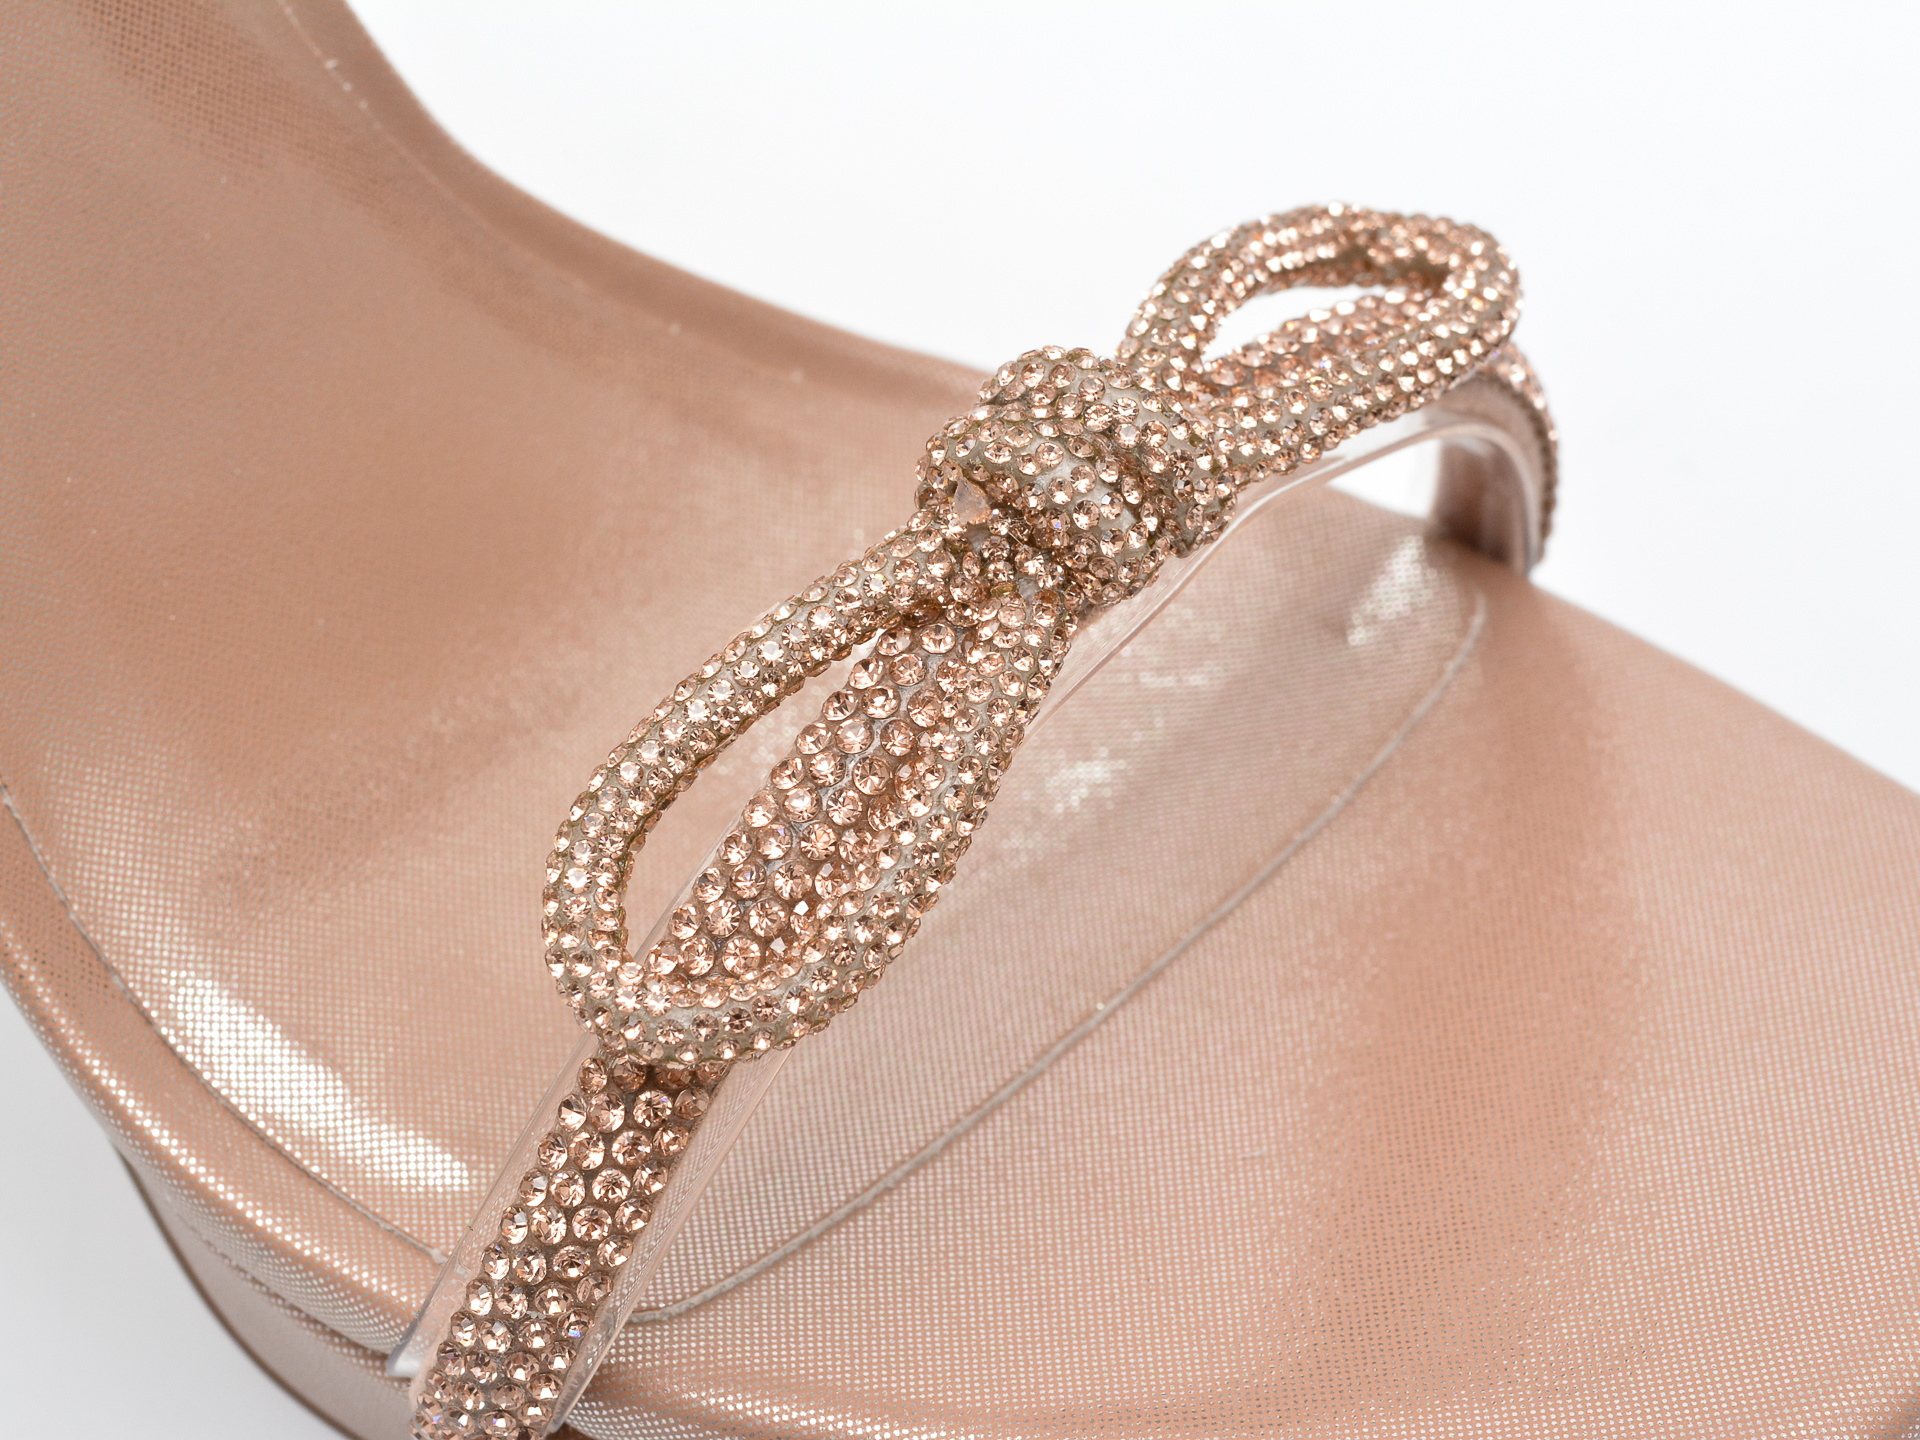 Sandale ALDO maro, DOMENICA230, din material textil /femei/sandale imagine noua